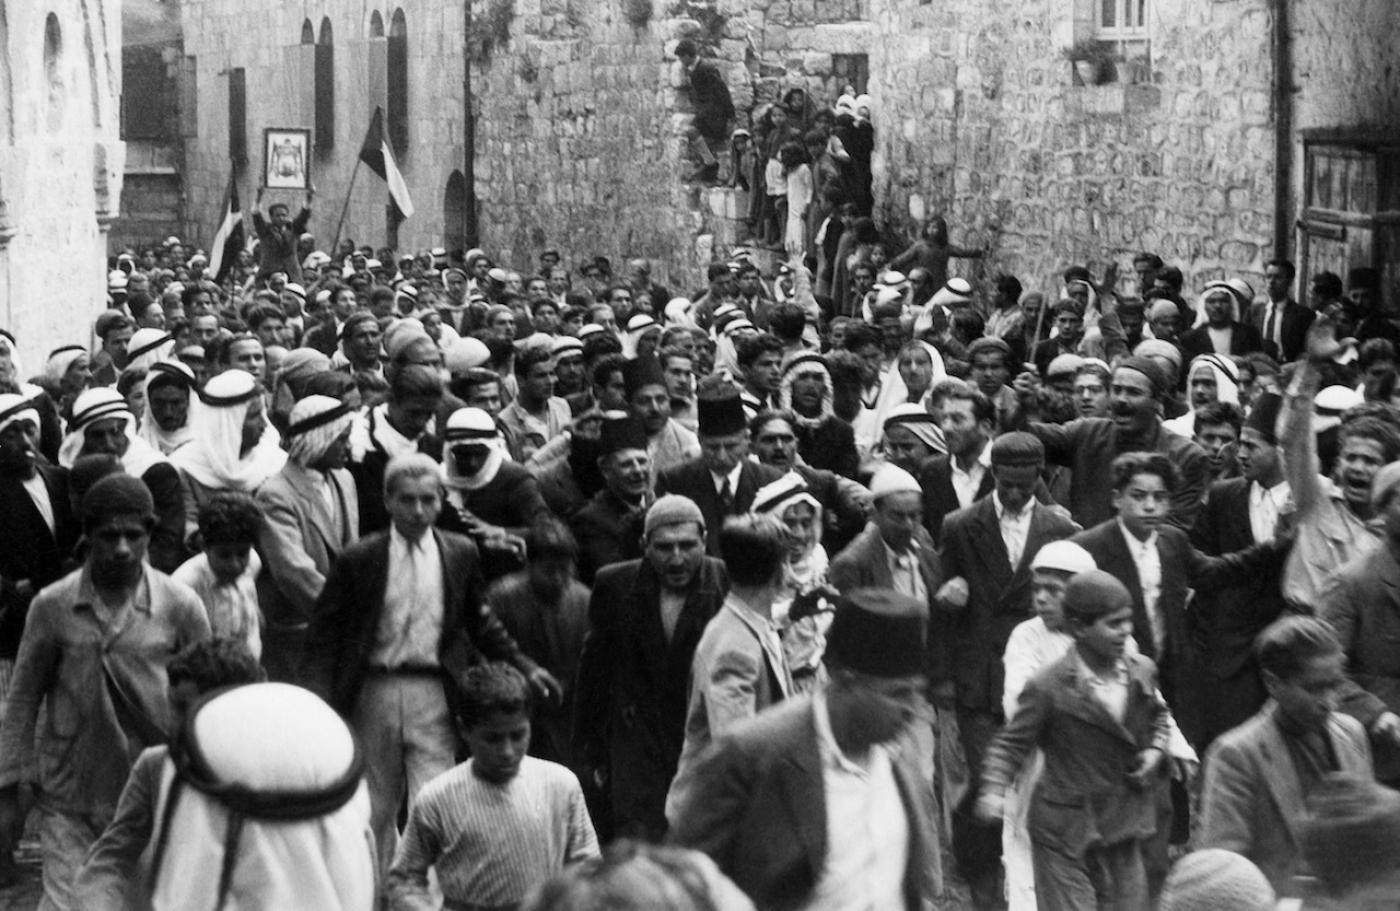 Une photo datée d’avant 1937 pendant le mandat britannique en Palestine montre des Arabes manifestant dans la vieille ville de Jérusalem contre l’immigration juive en Palestine (AFP)